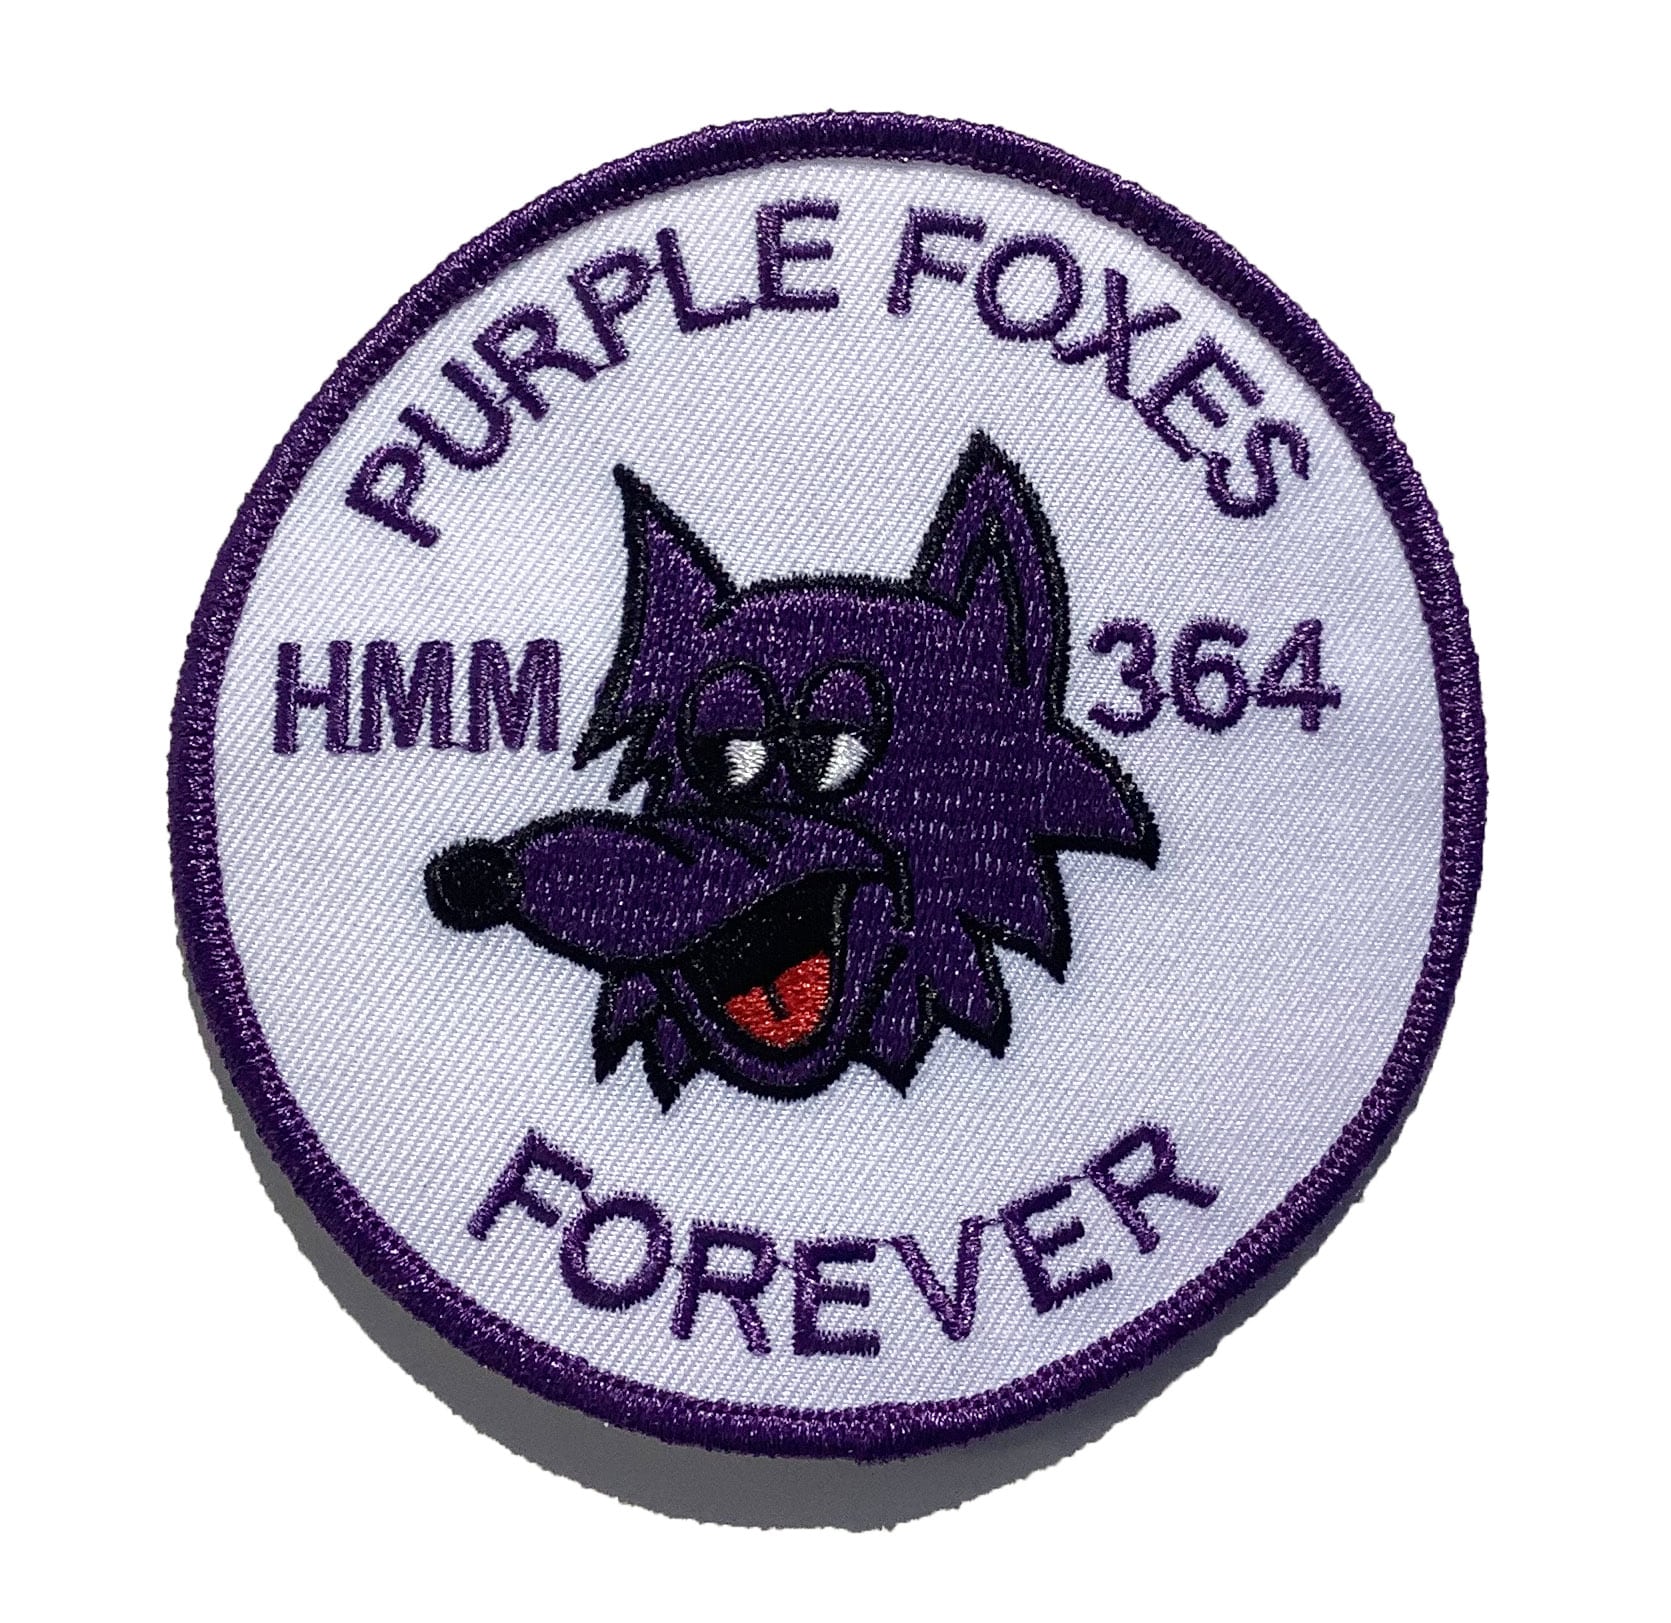 HMM-364 Vietnam Purple Foxes Squadron Patch Plastic Backing 